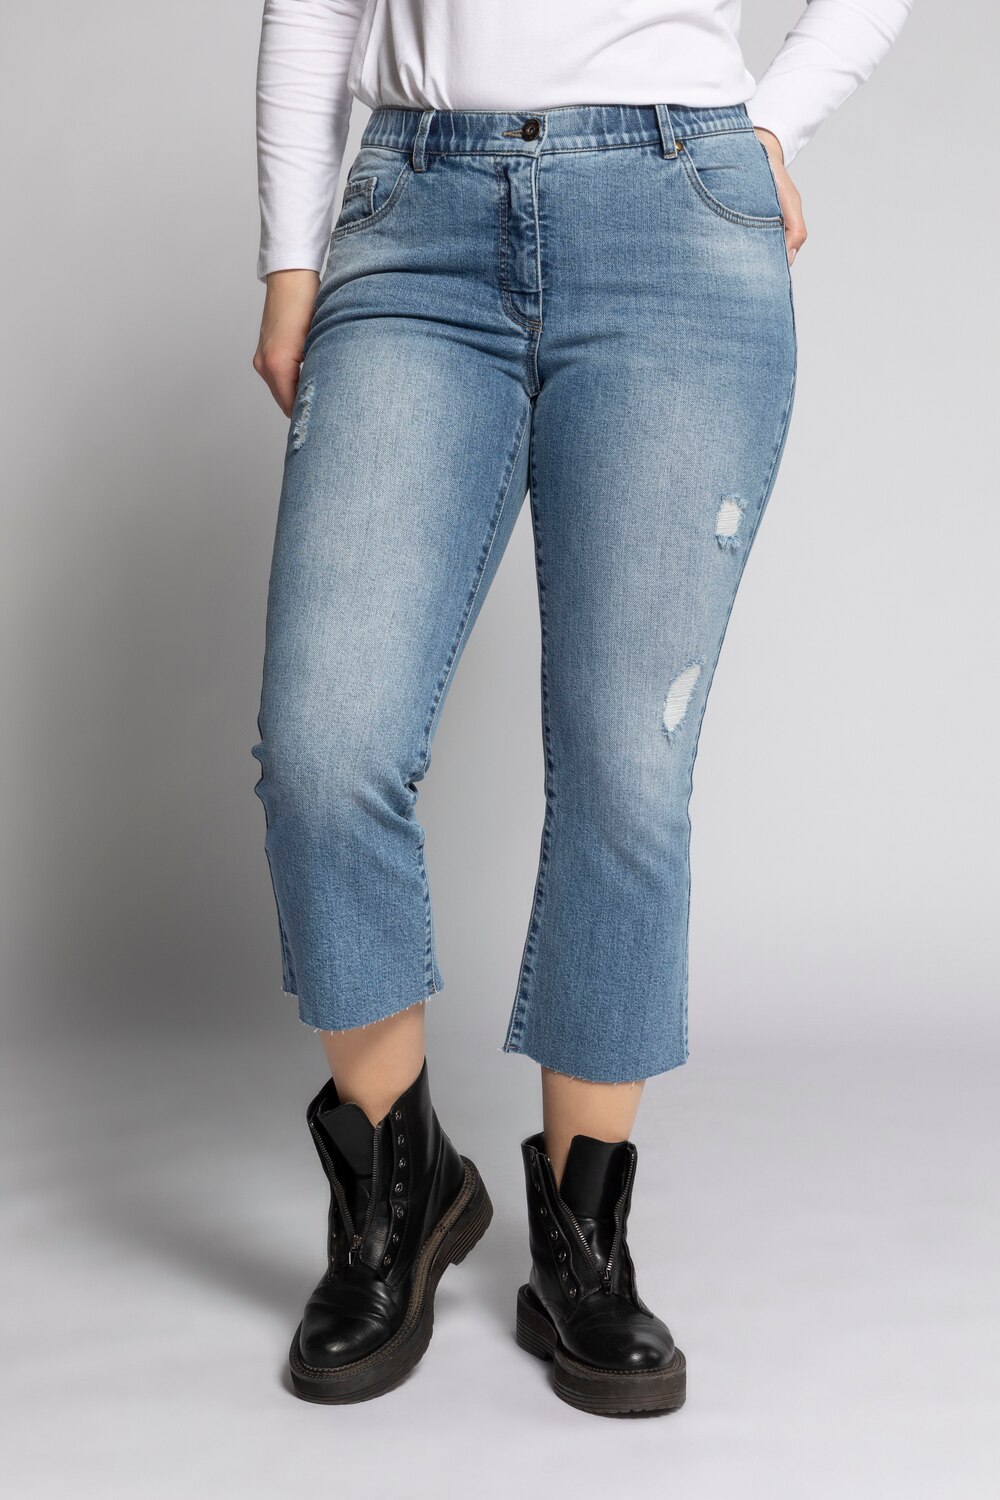 Grote Maten cropped flared jeans, Dames, paars, Maat: 54, Katoen, Studio Untold